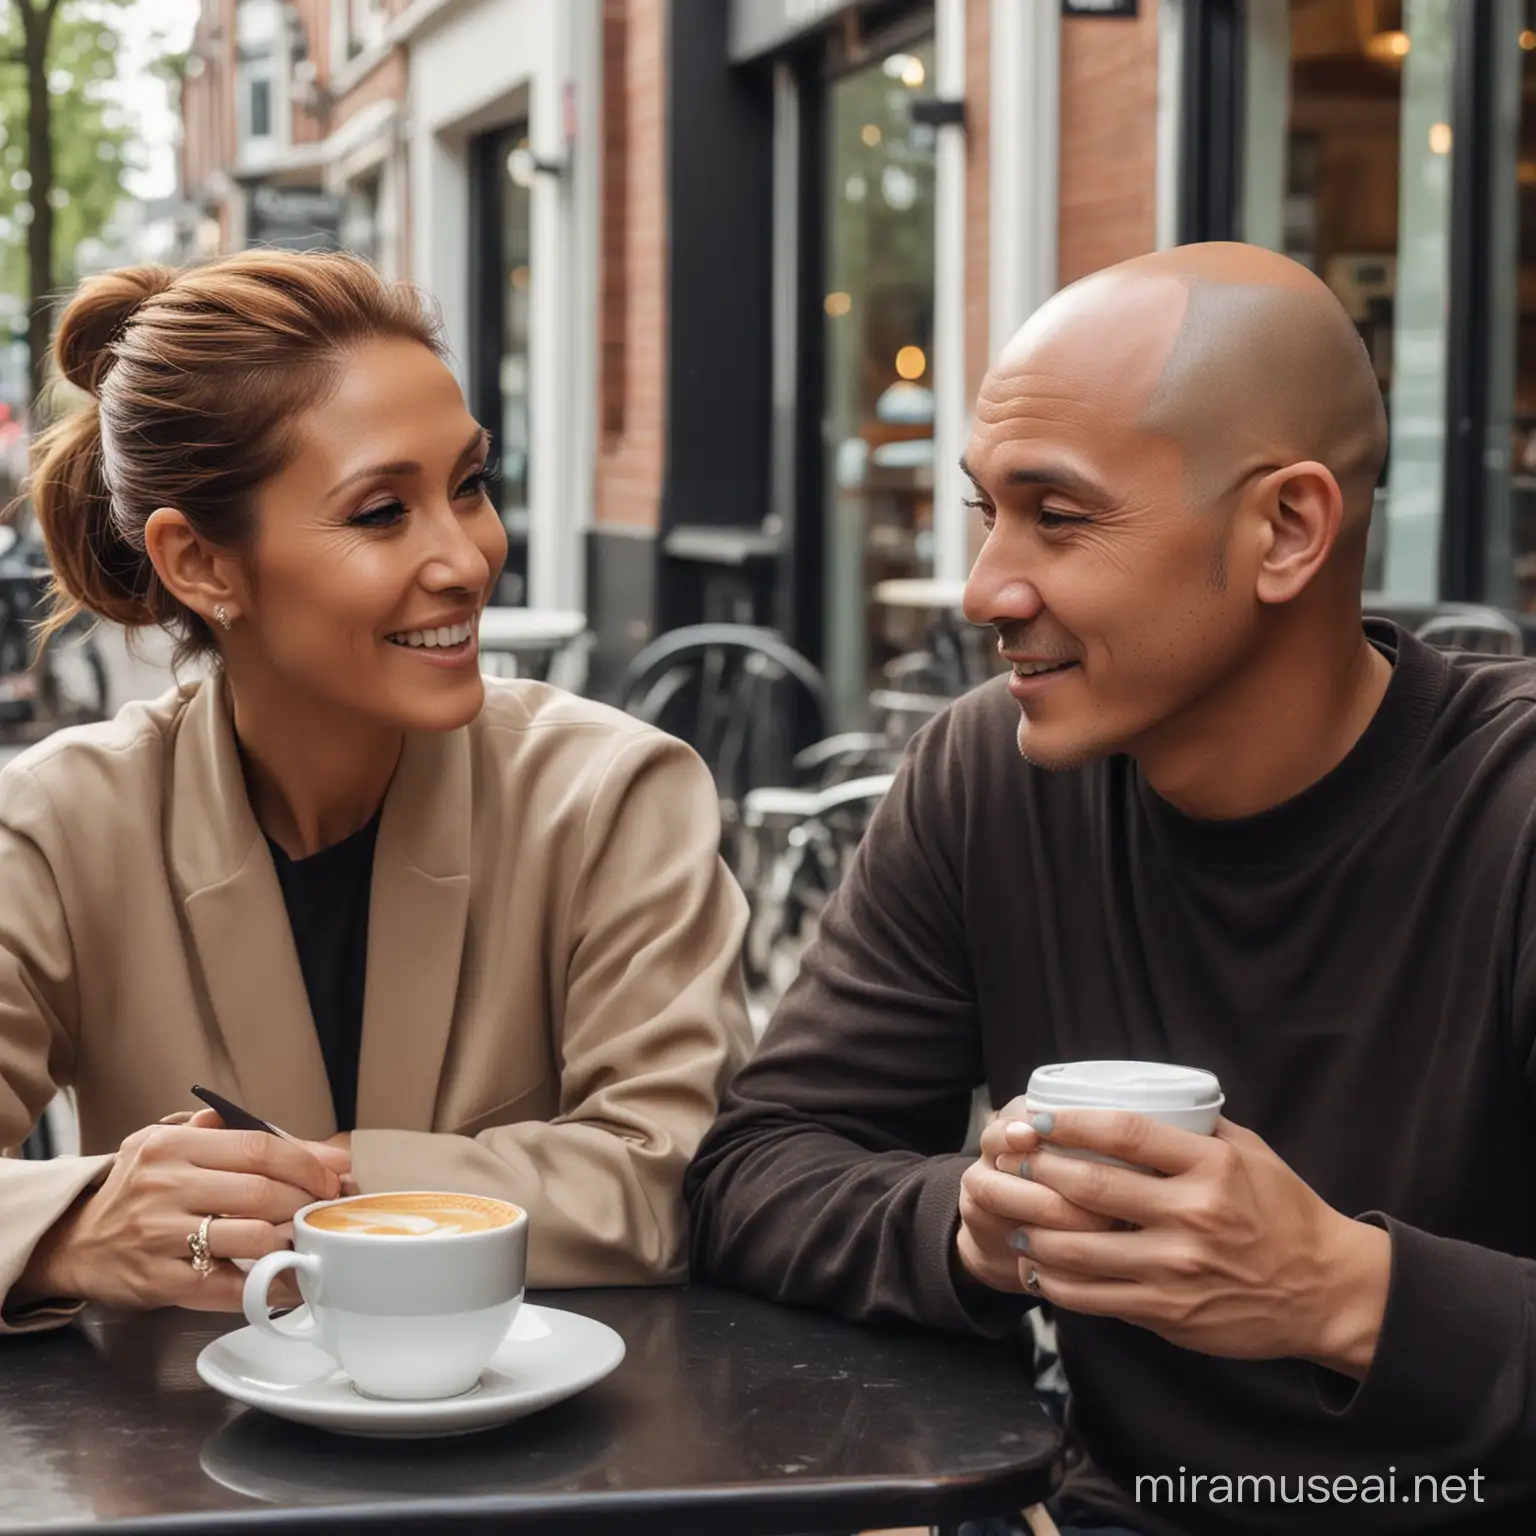 buatkan sebuah poto cinematik pria indonesia,rapi kepala botak,sedang duduk santai bersama artis wanita eropa celine dion, mereka terlihat santai sambil menikmati kopi disebuah cafe di amsterdam belanda